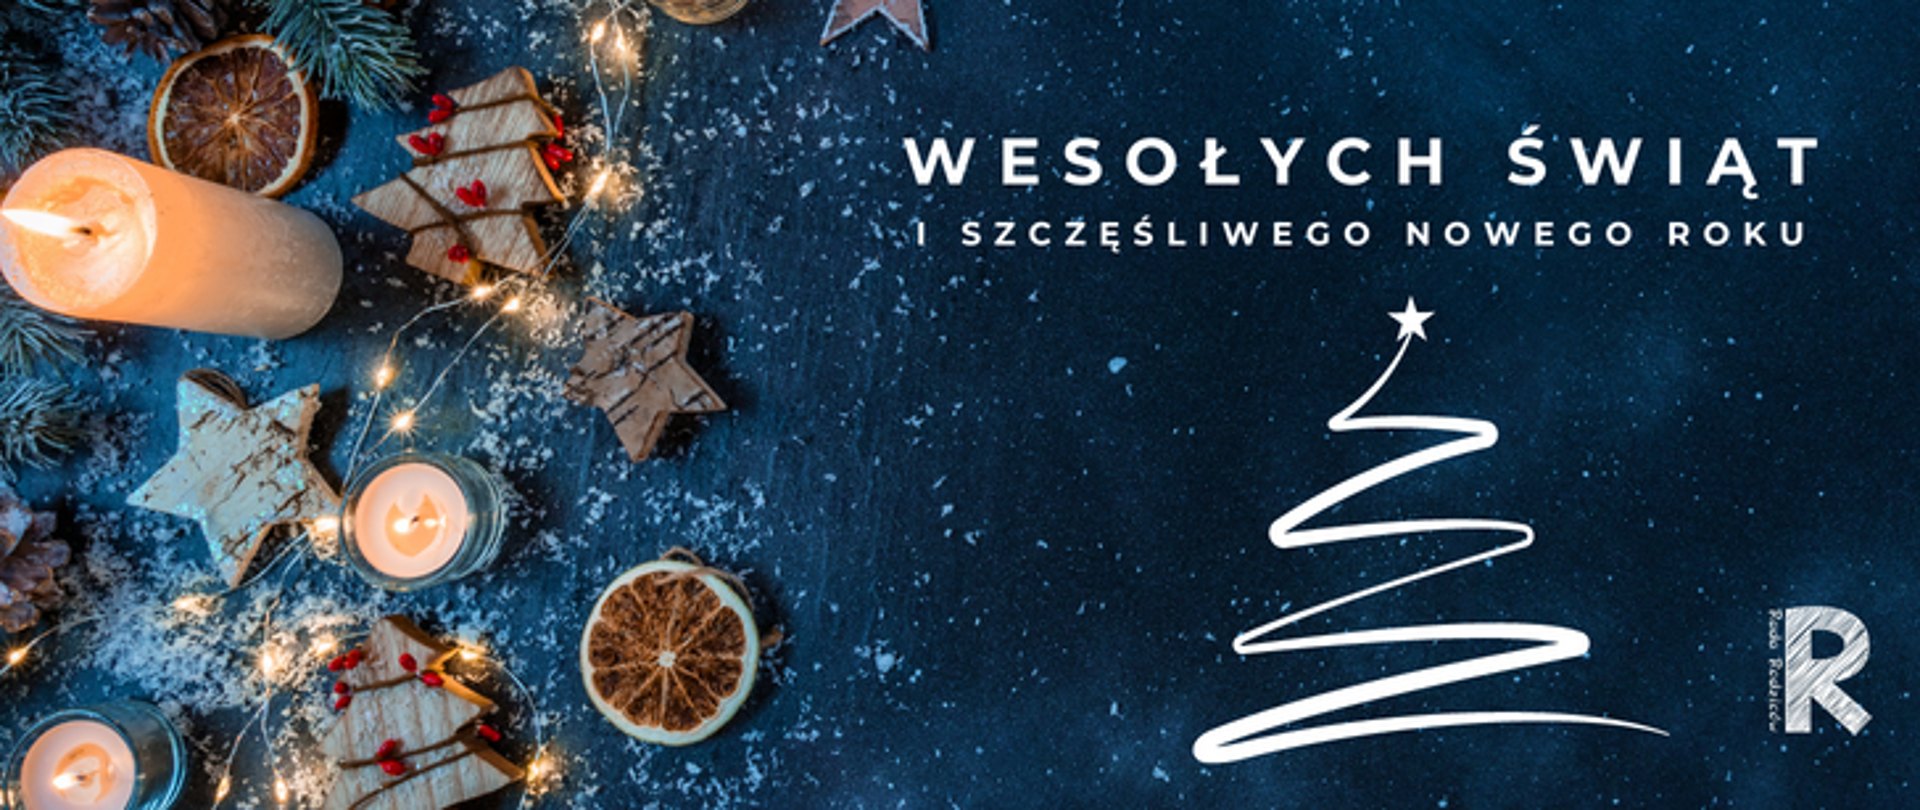 zdjęcie przedstawia kartkę świąteczną na granatowym tle, po lewej stronie ozdoby świąteczne, na górze napis wesołych świąt i szczęśliwego nowego roku, pod spodem grafika biała choinki, po prawej logo symfonii 